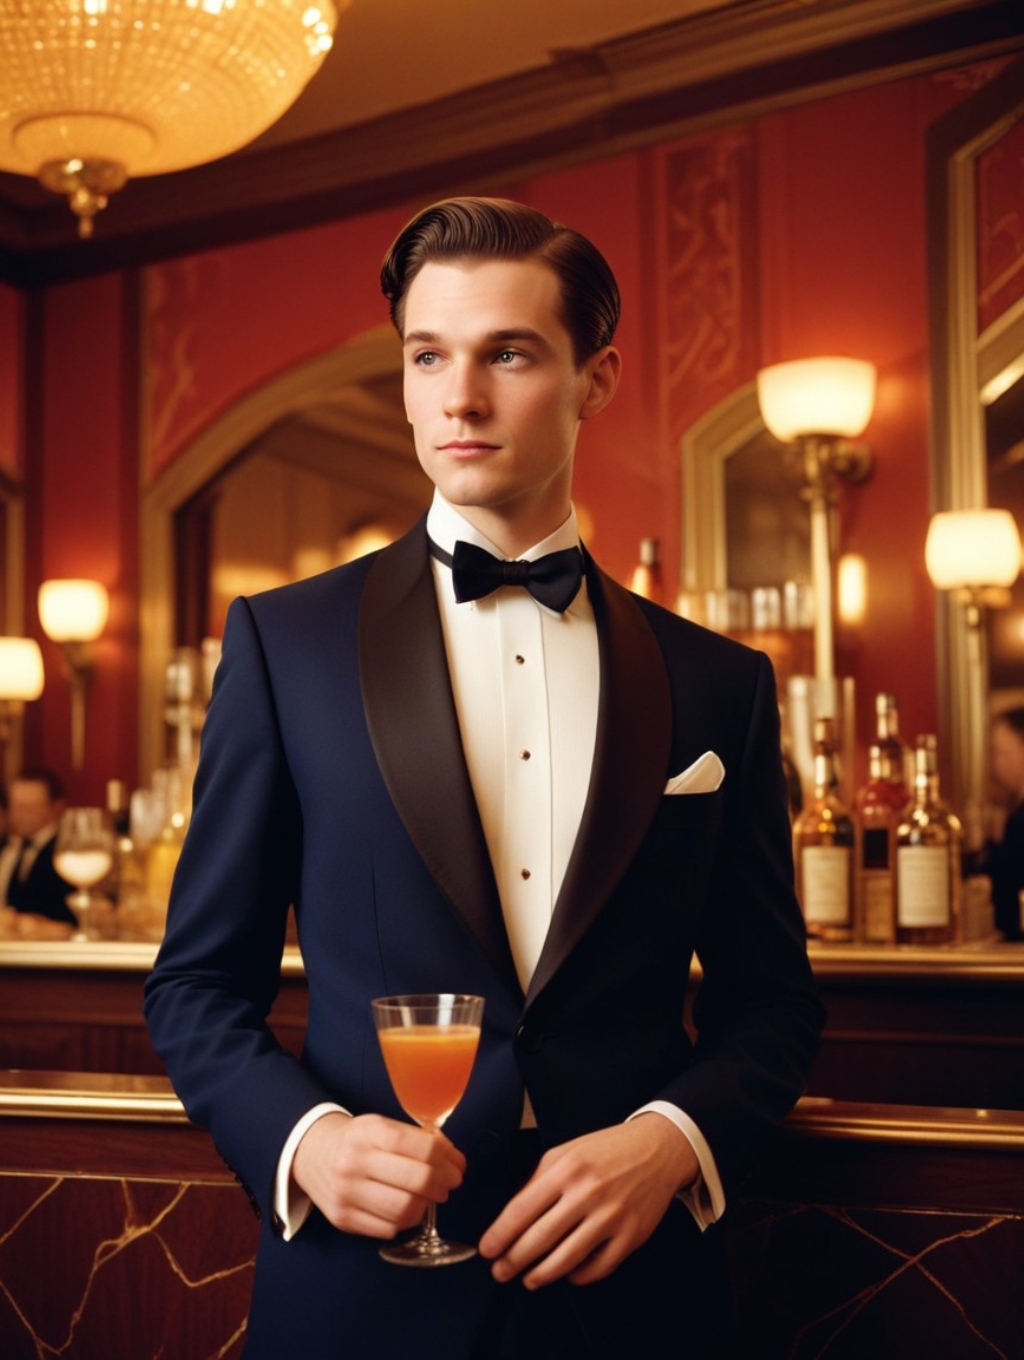 Art Deco Cocktail Menu Men: Image Frames & Headshots-Theme:4